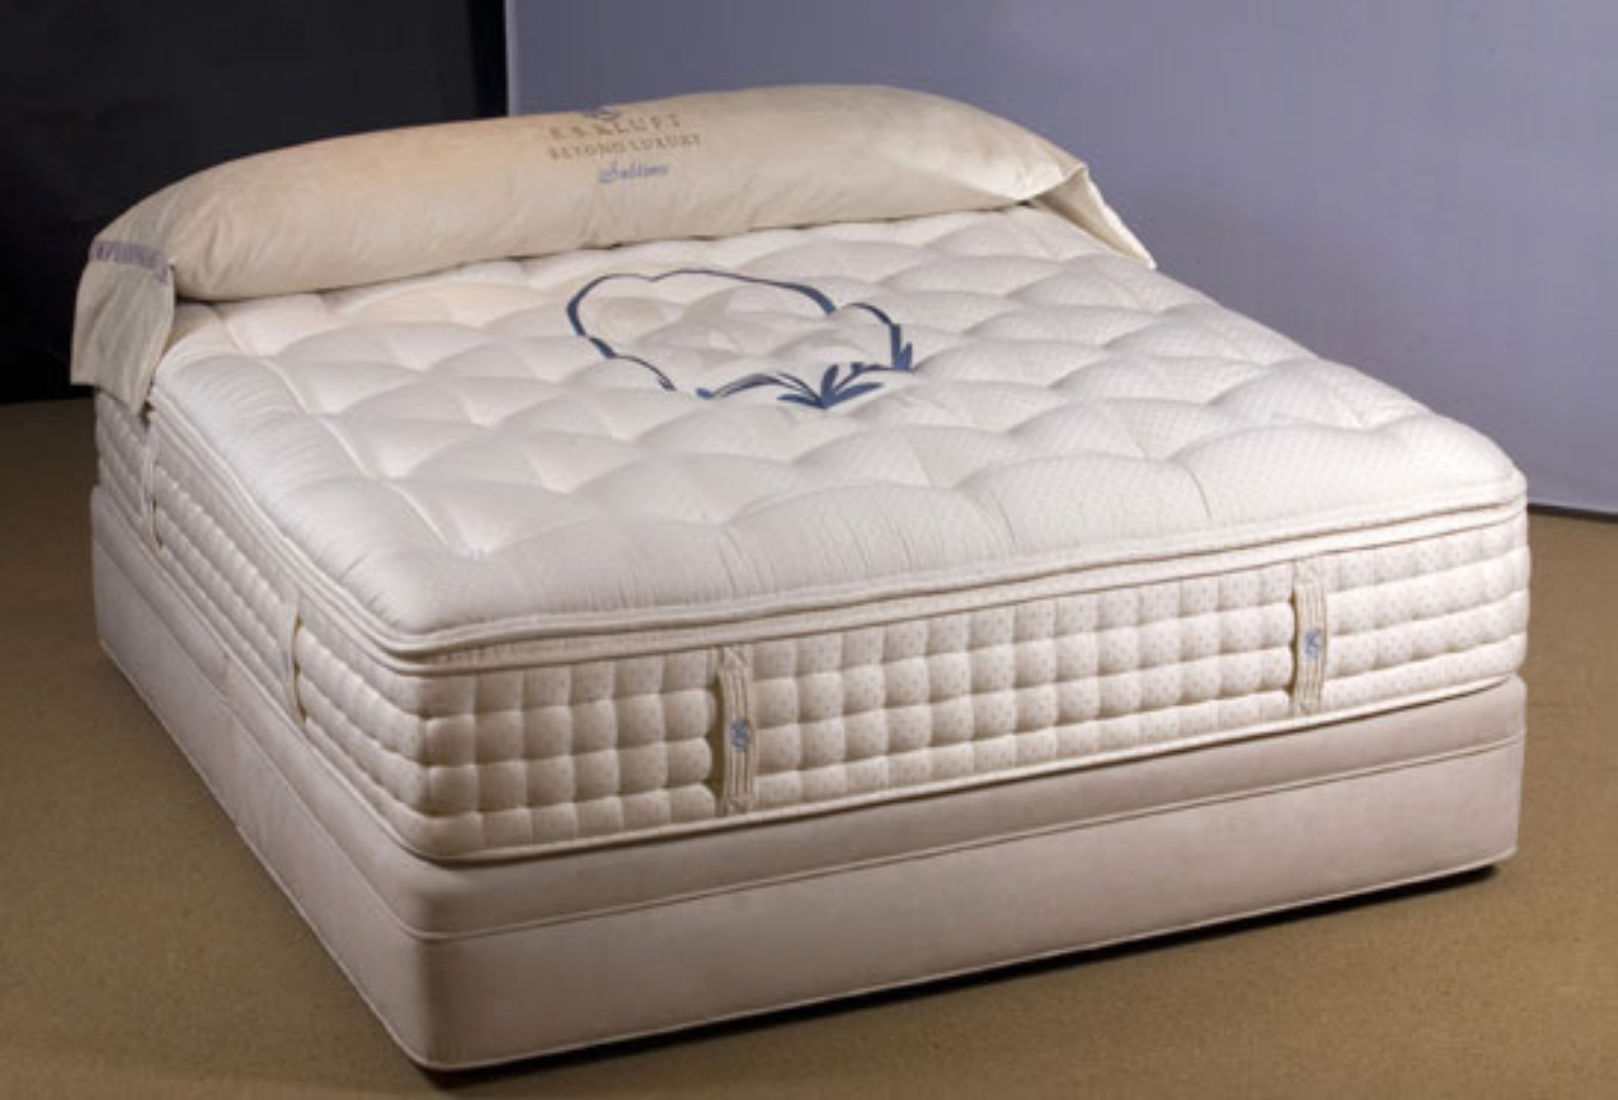 mattress world furniture review